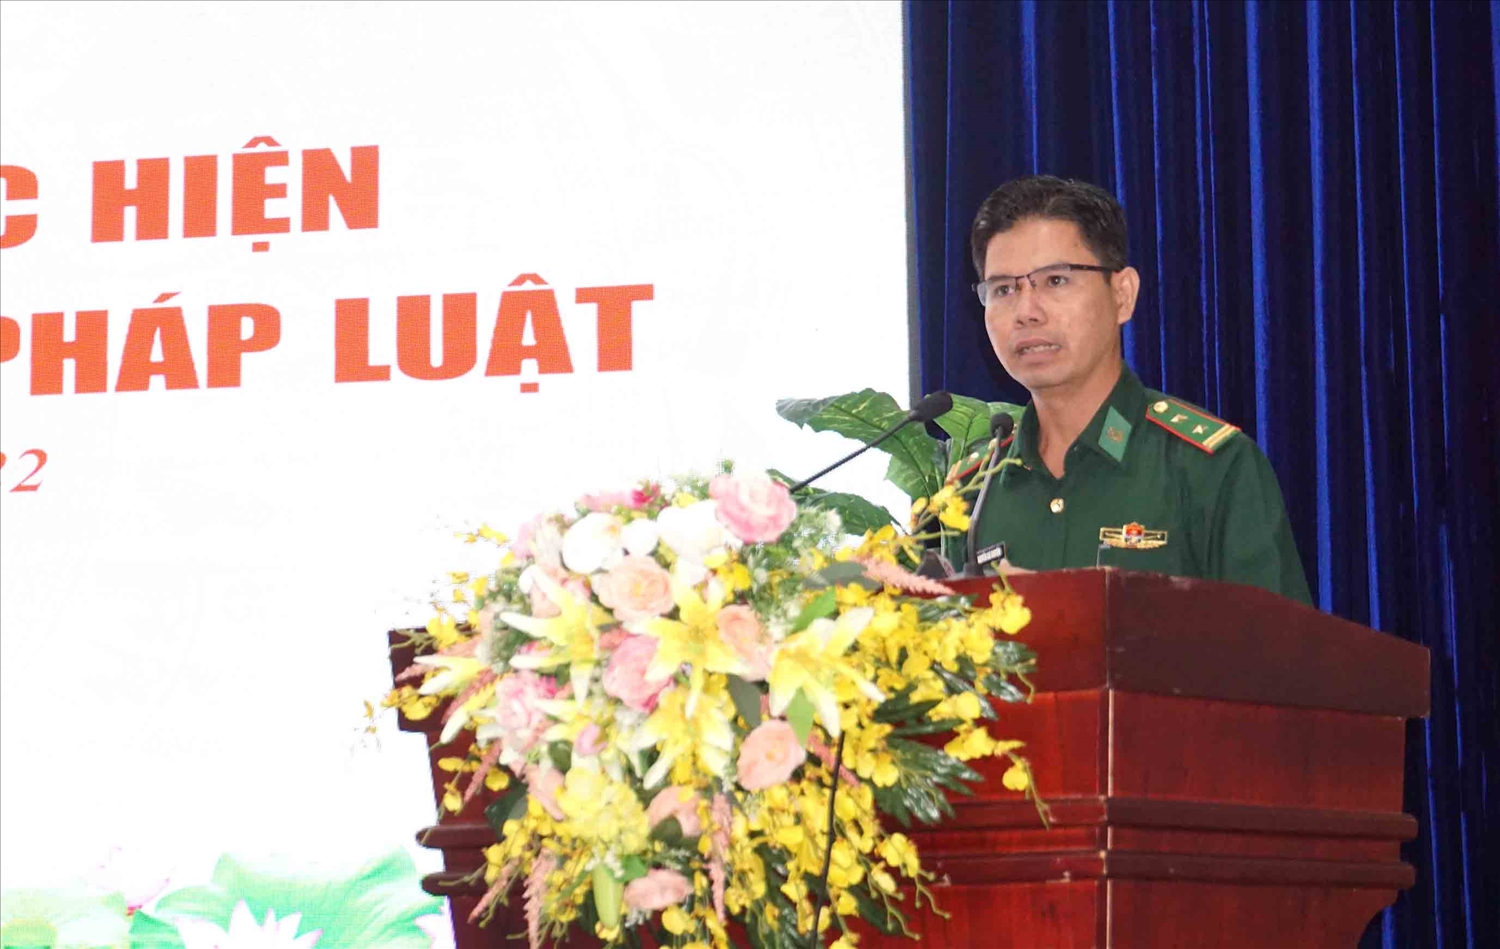 Trung tá Nguyễn Trí Nguyện - BĐBP Cà Mau chia sẻ kinh nghiệm về tuyên truyền phổ biến GDPL tại Hội nghị